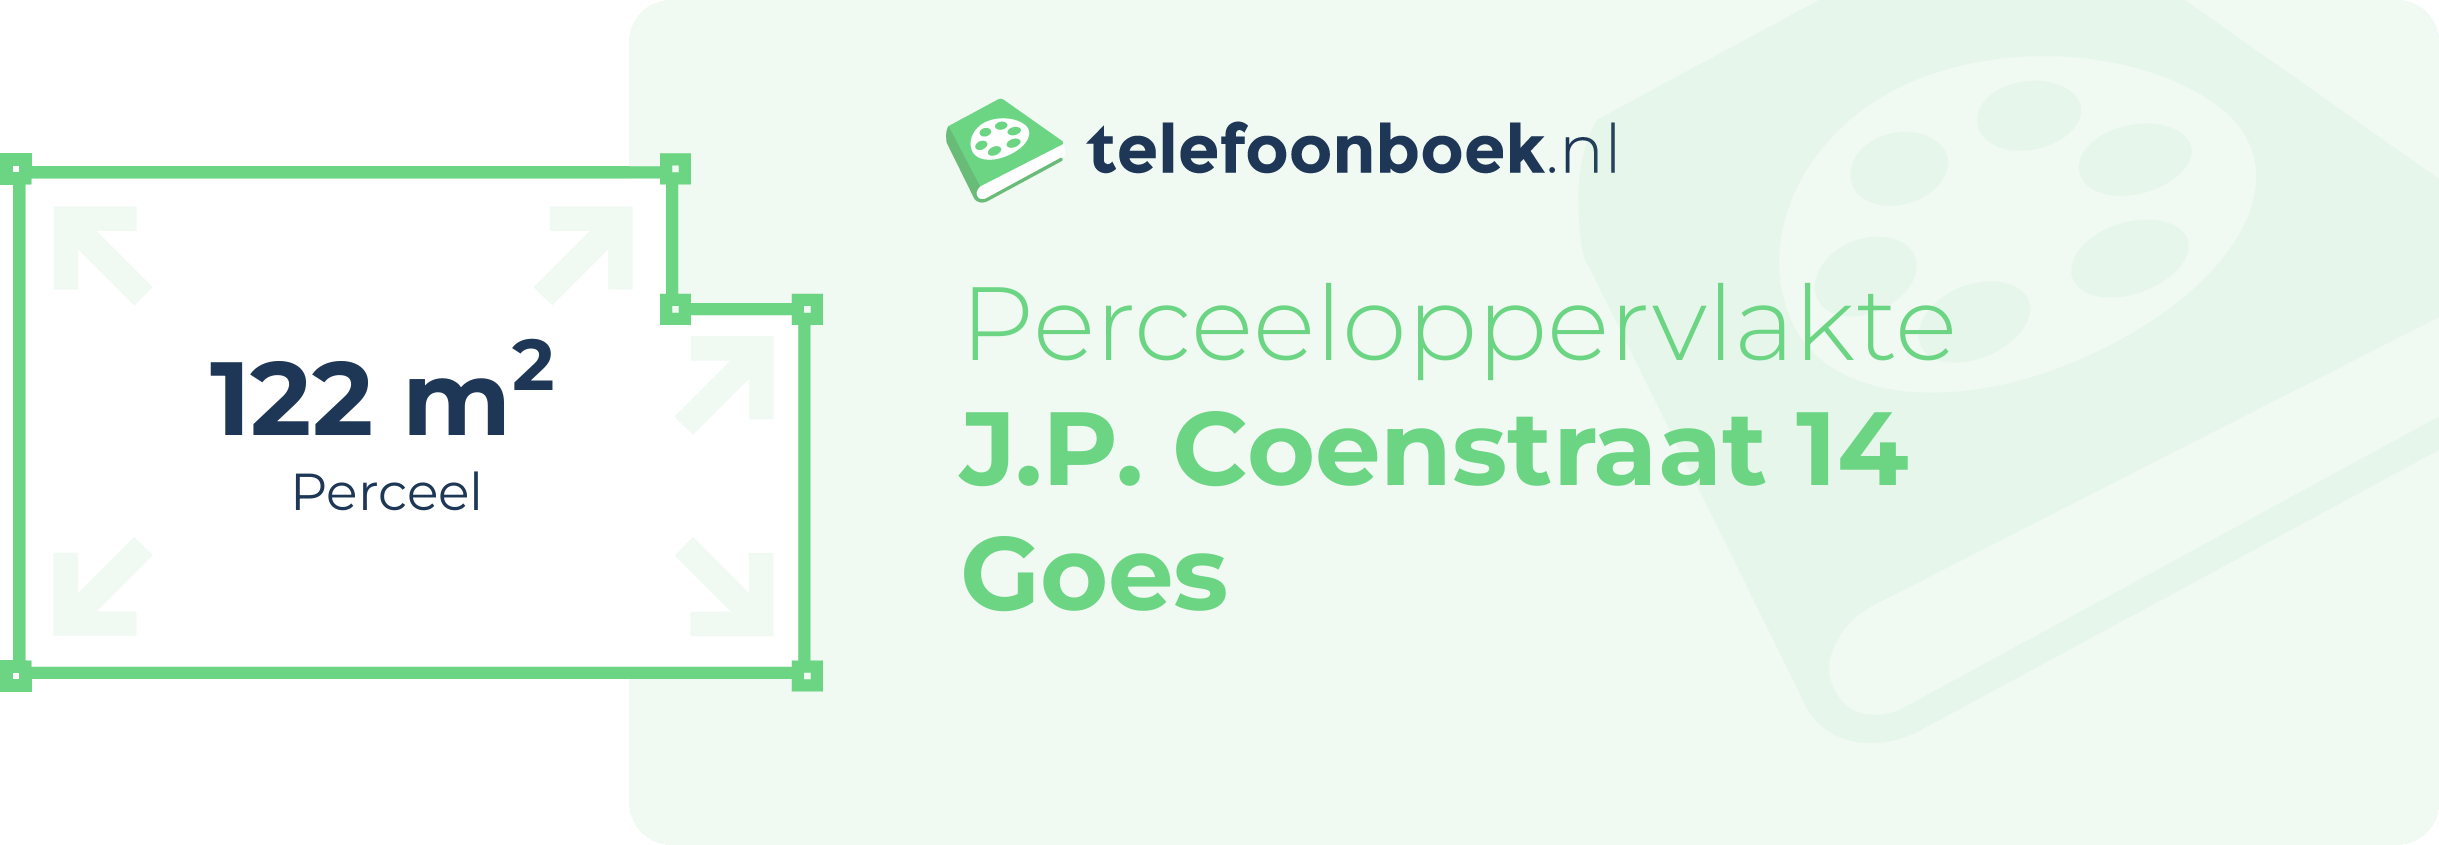 Perceeloppervlakte J.P. Coenstraat 14 Goes